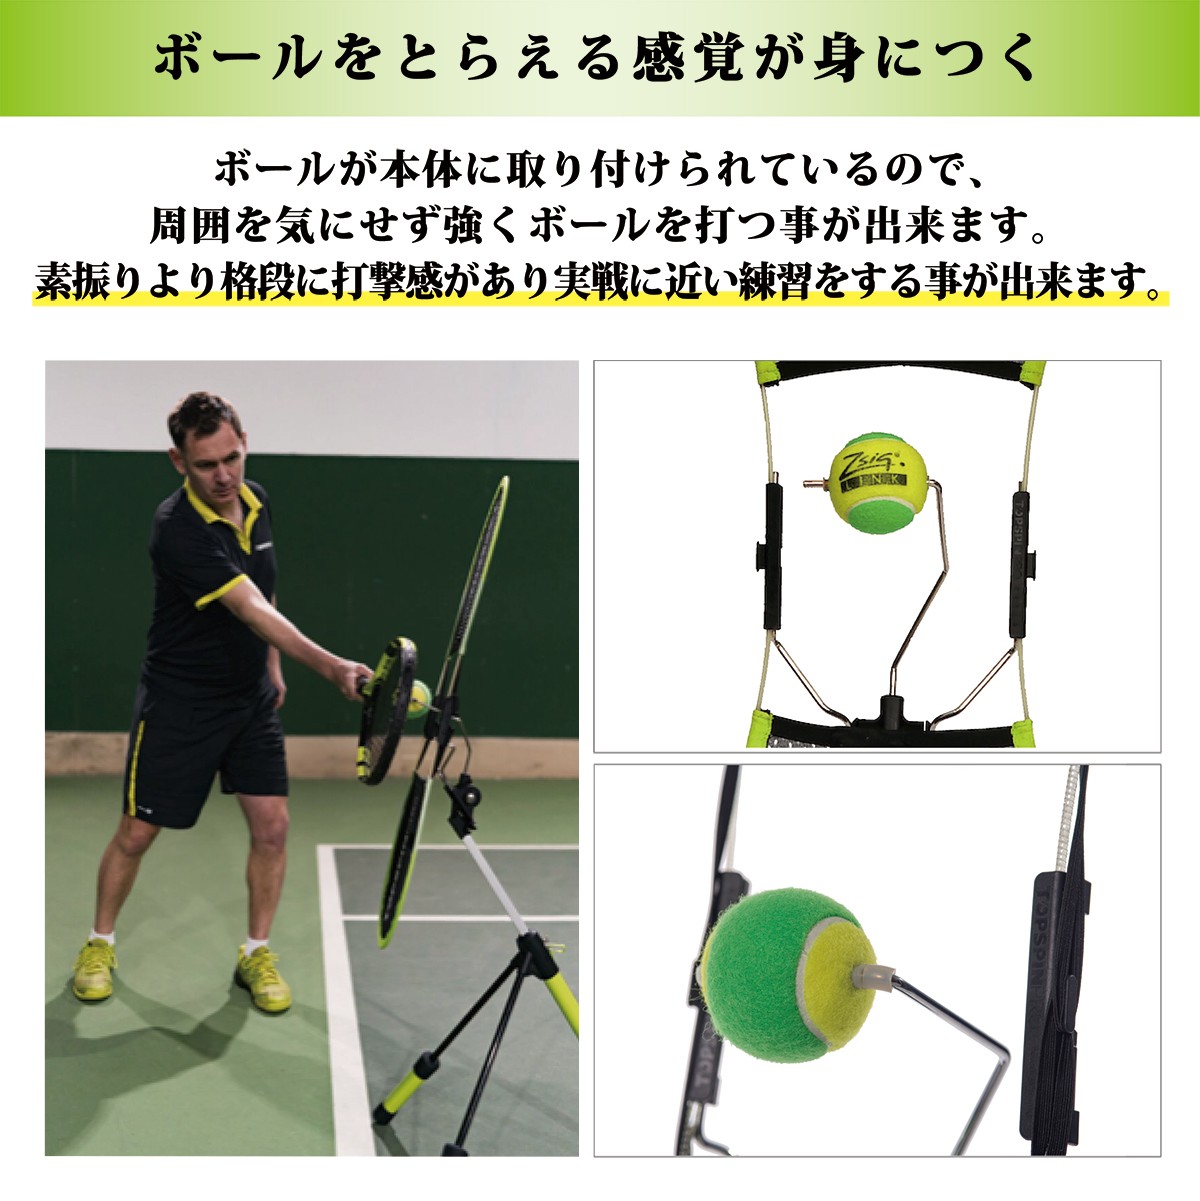 テニス 練習器具 練習機 硬式テニス TopspinPro トップスピンプロ 